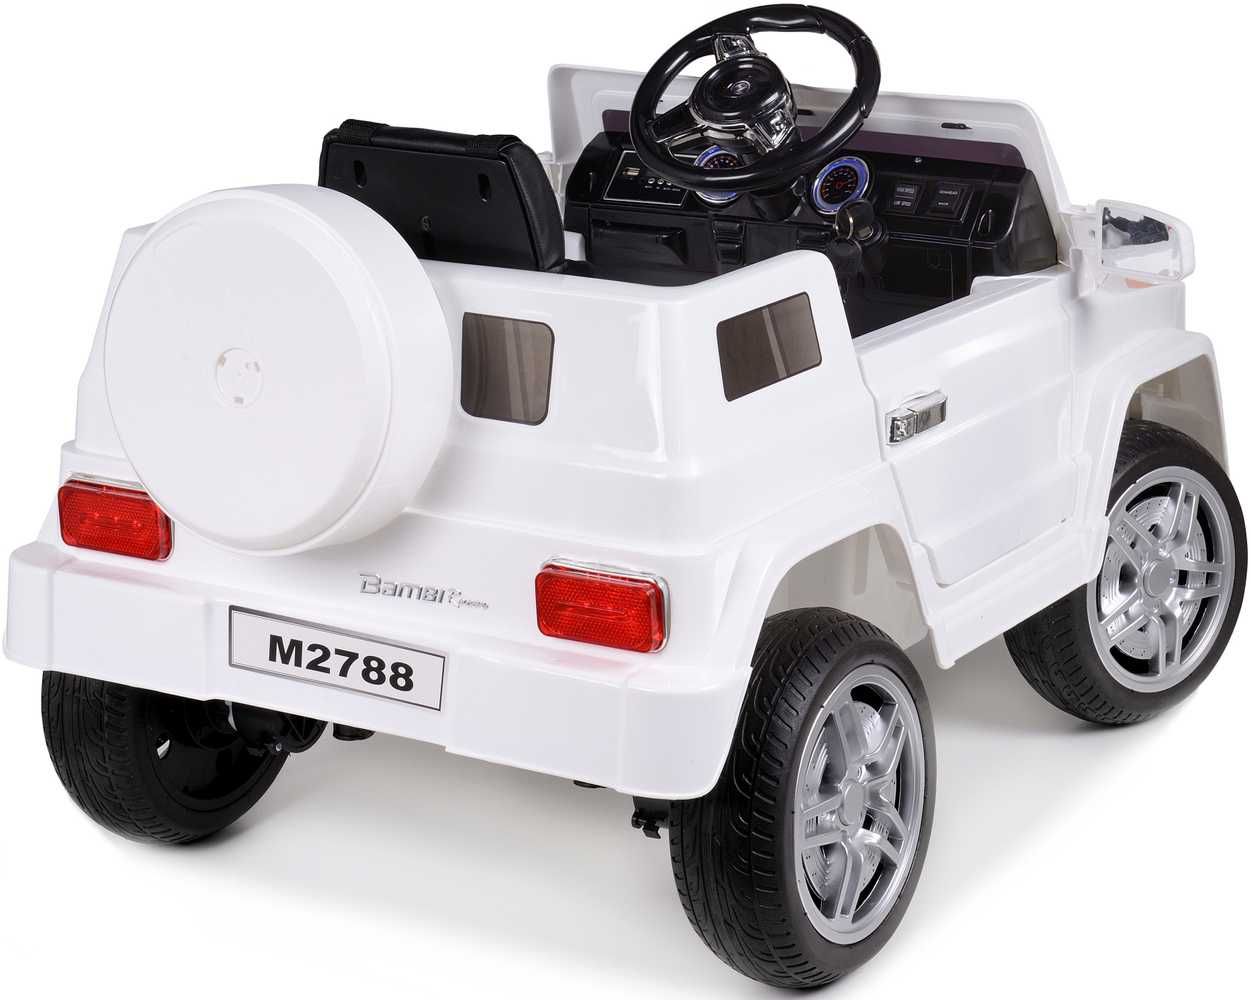 Pojazd akumulatorowy dla dzieci HL1058 - Biały